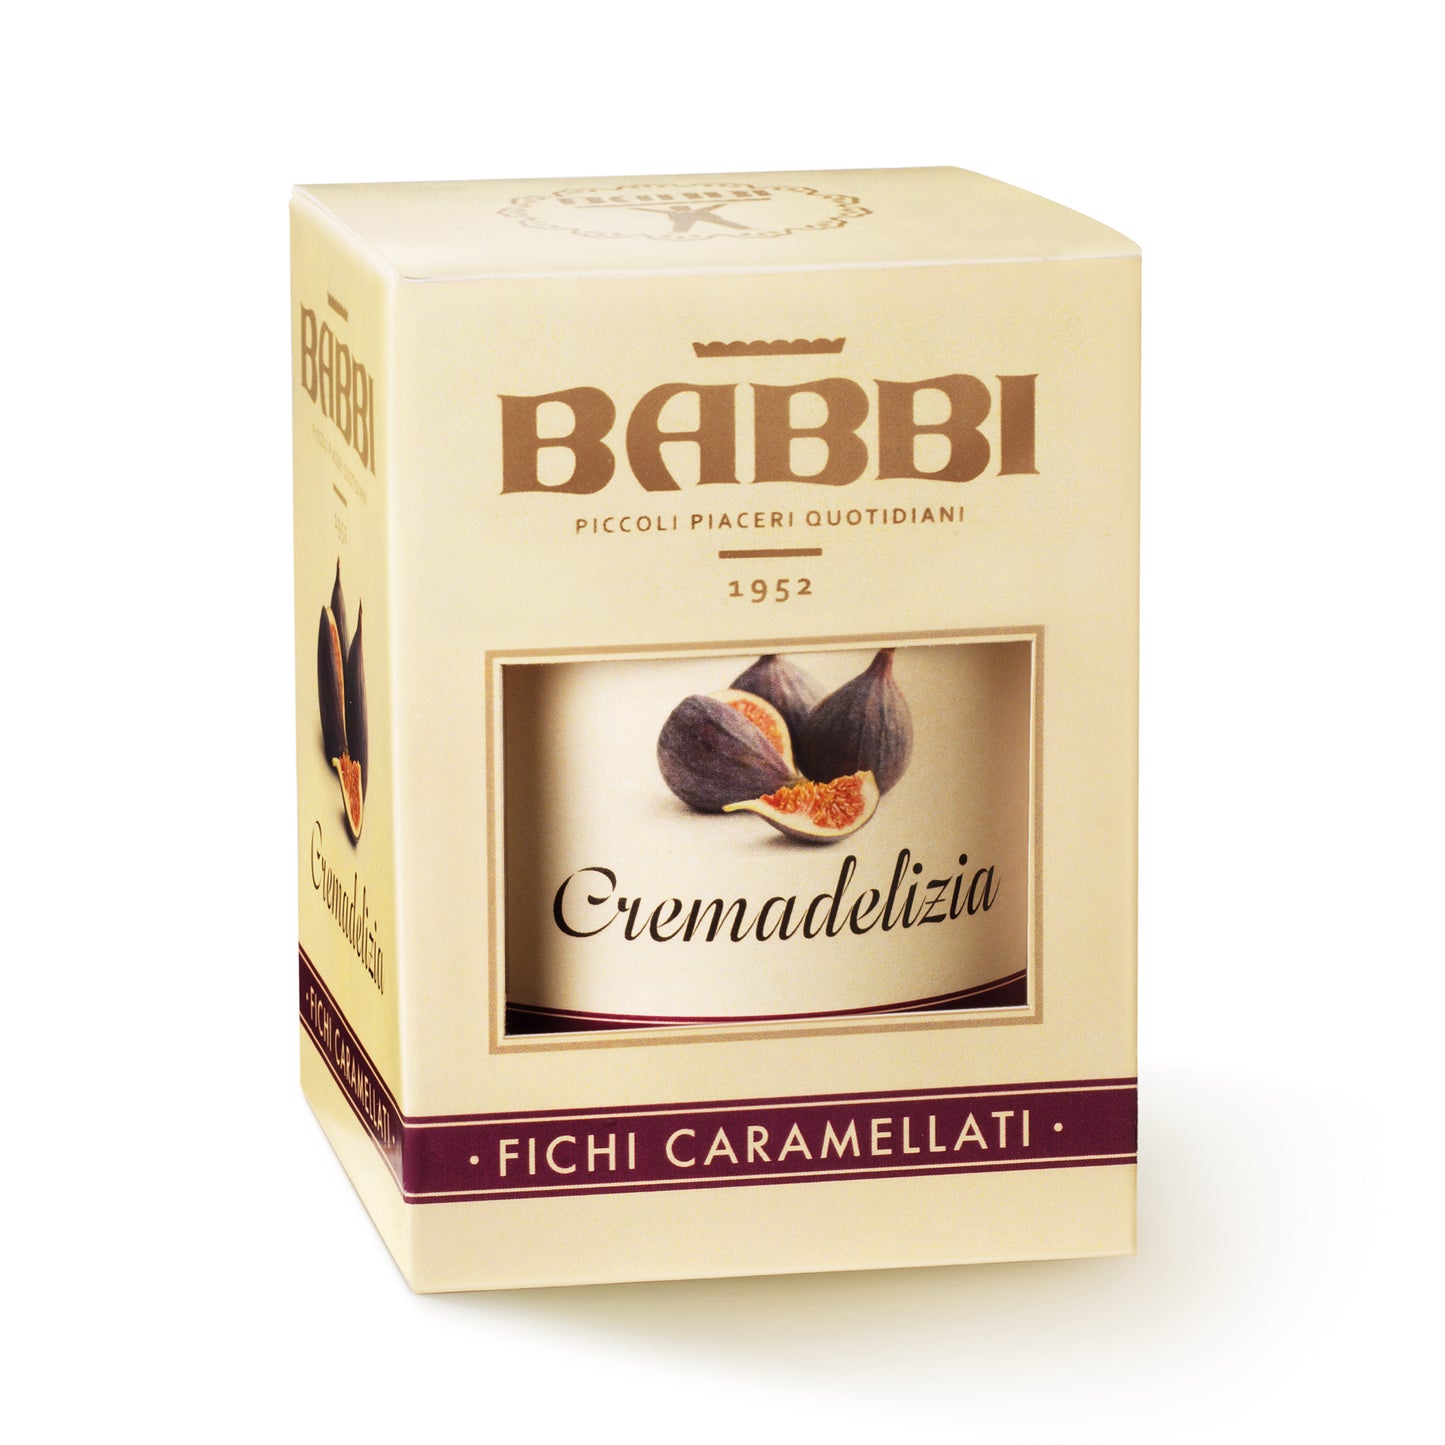 CremaDelizia Caramelized Figs